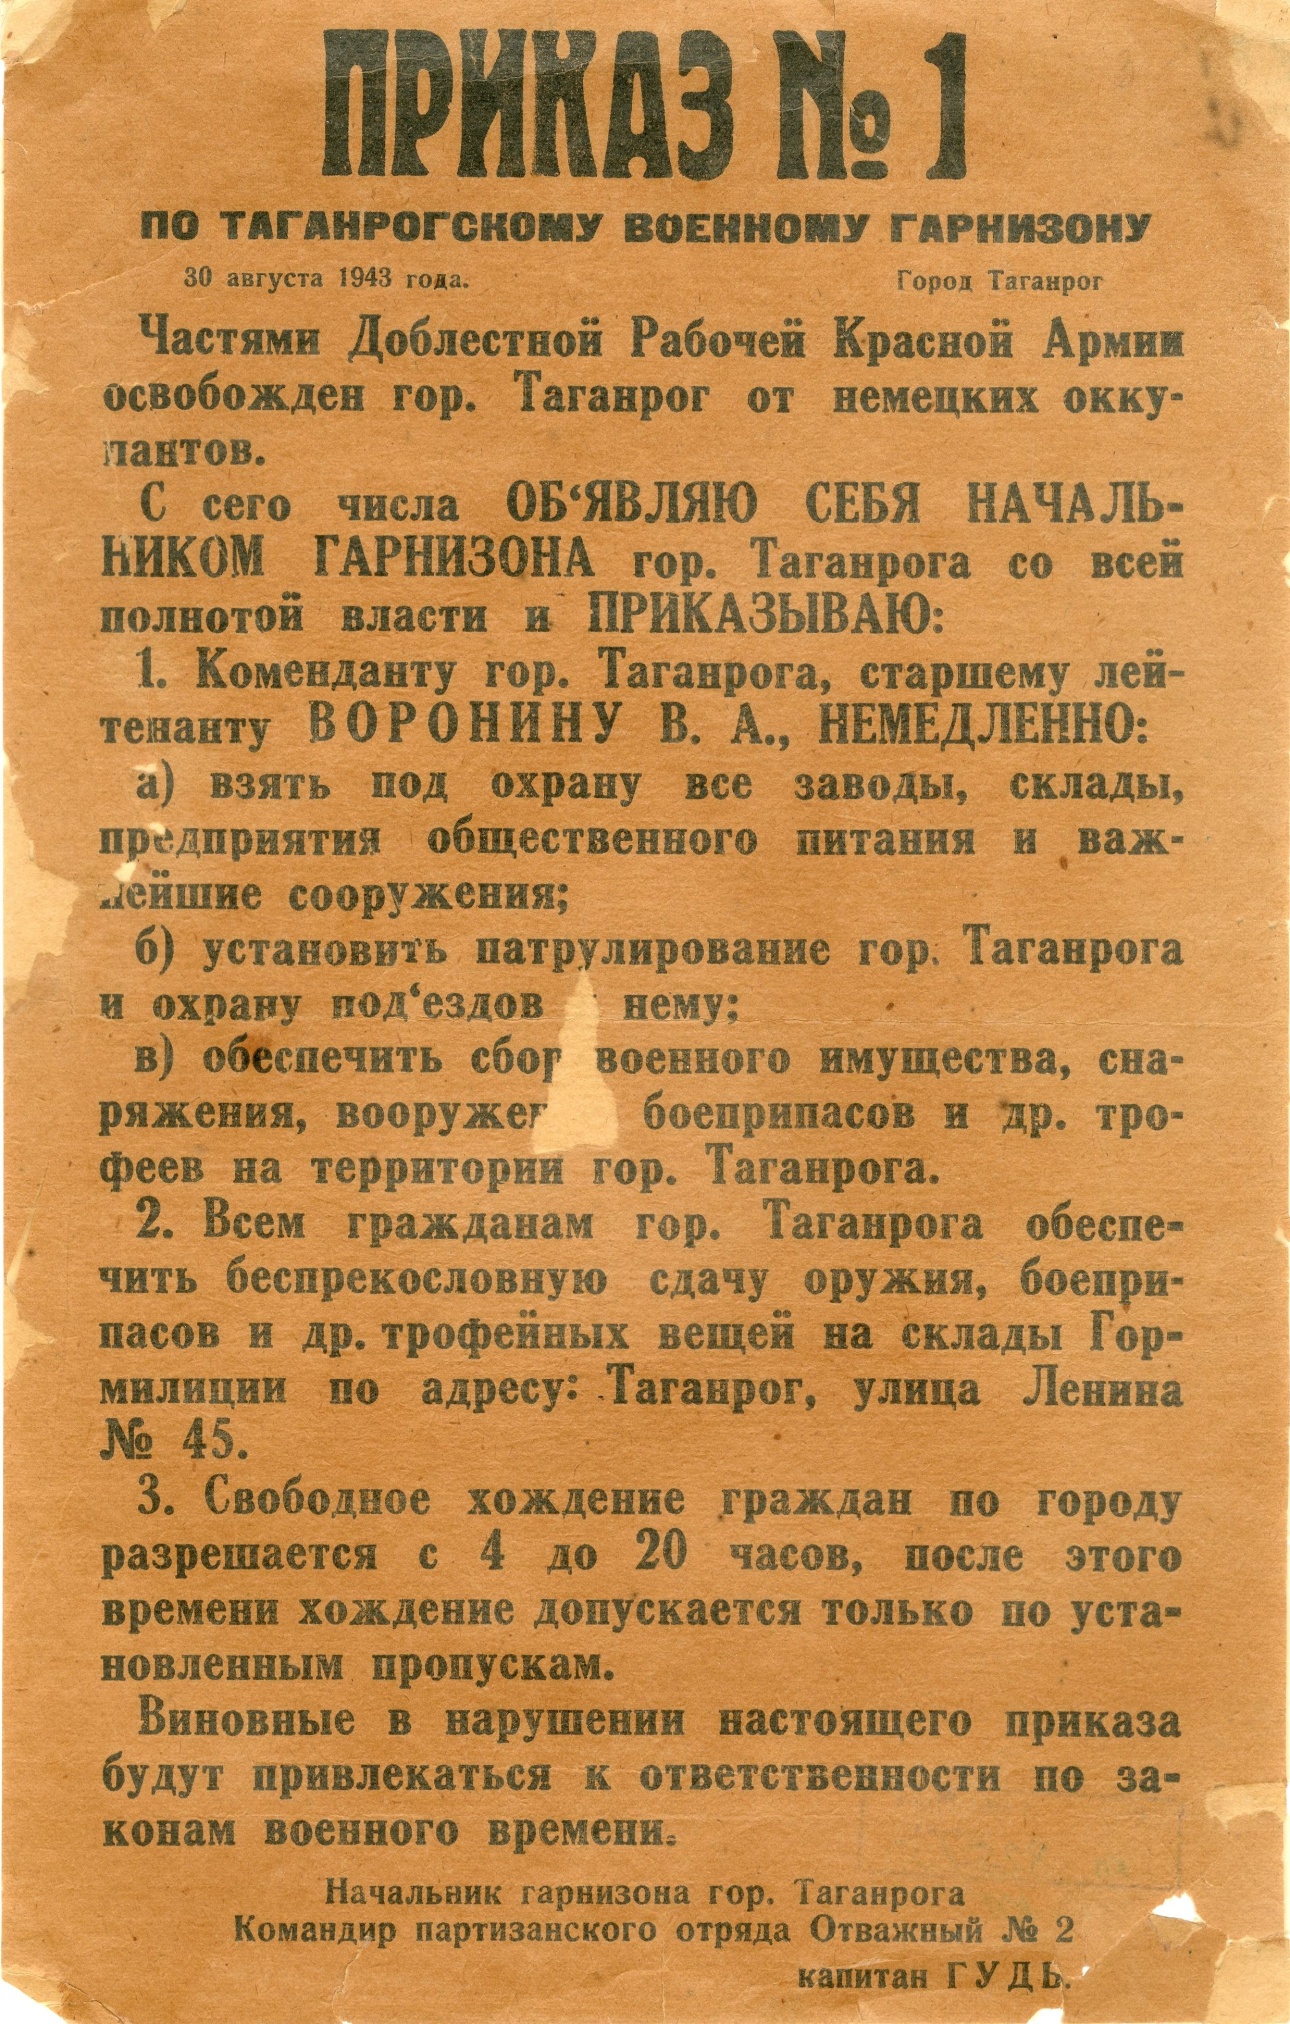 Приказ по таганрогскому военному гарнизону № 1. Командир партизанского отряда «Отважный-2» капитан Гуда. 30 августа 1943 года.